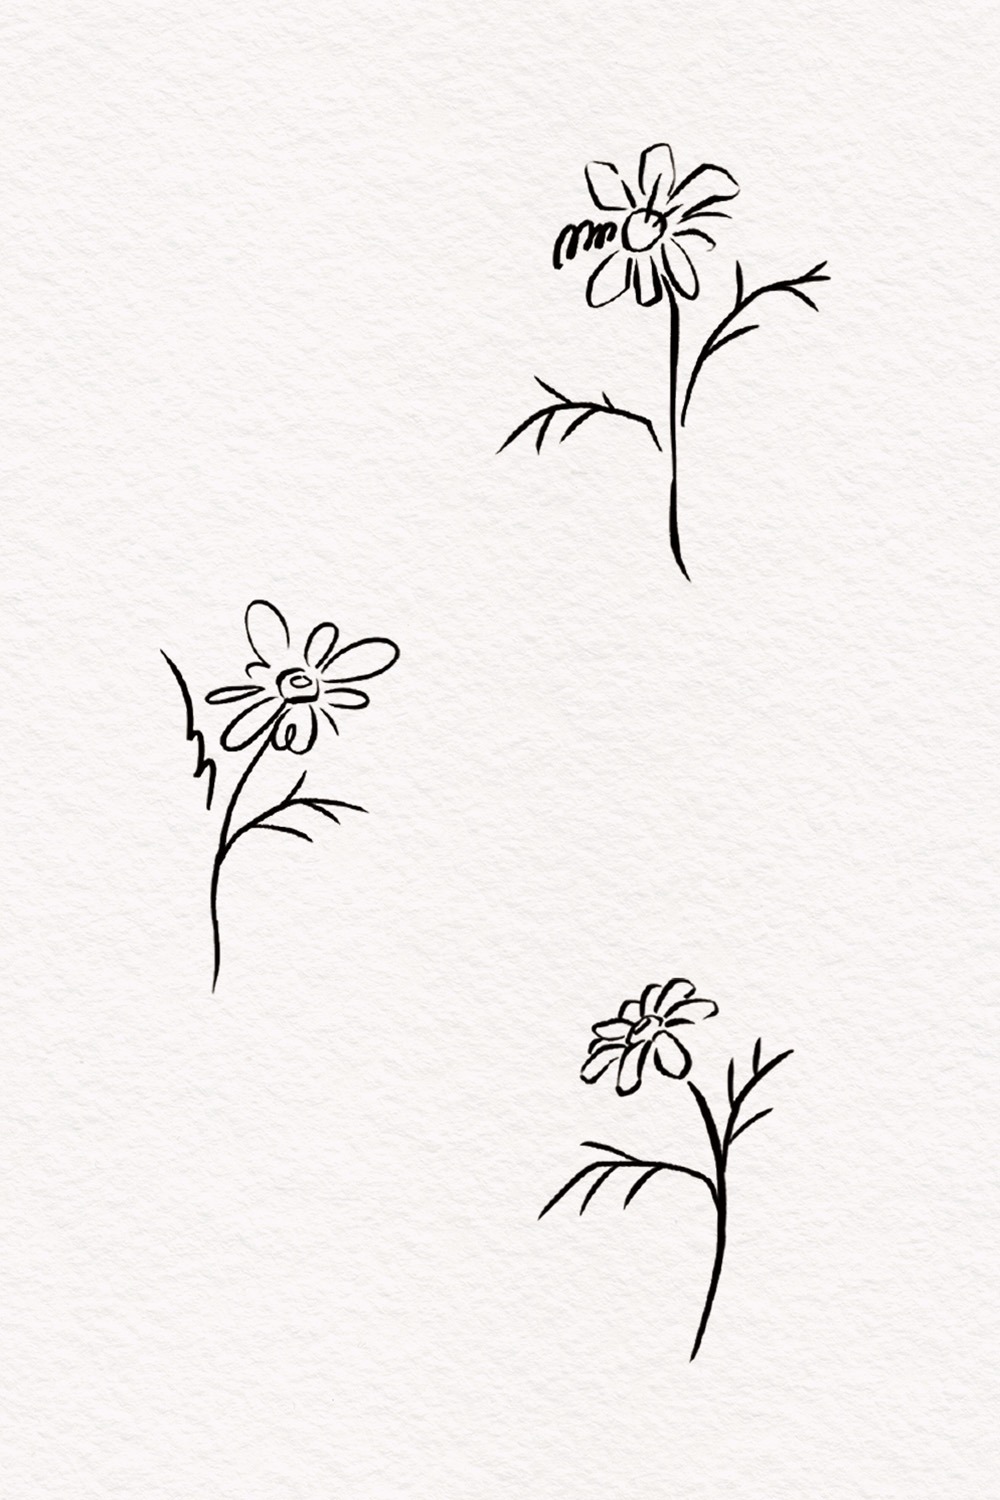 (242) 난춘(爛春) - 따뜻한 봄 (2EA)